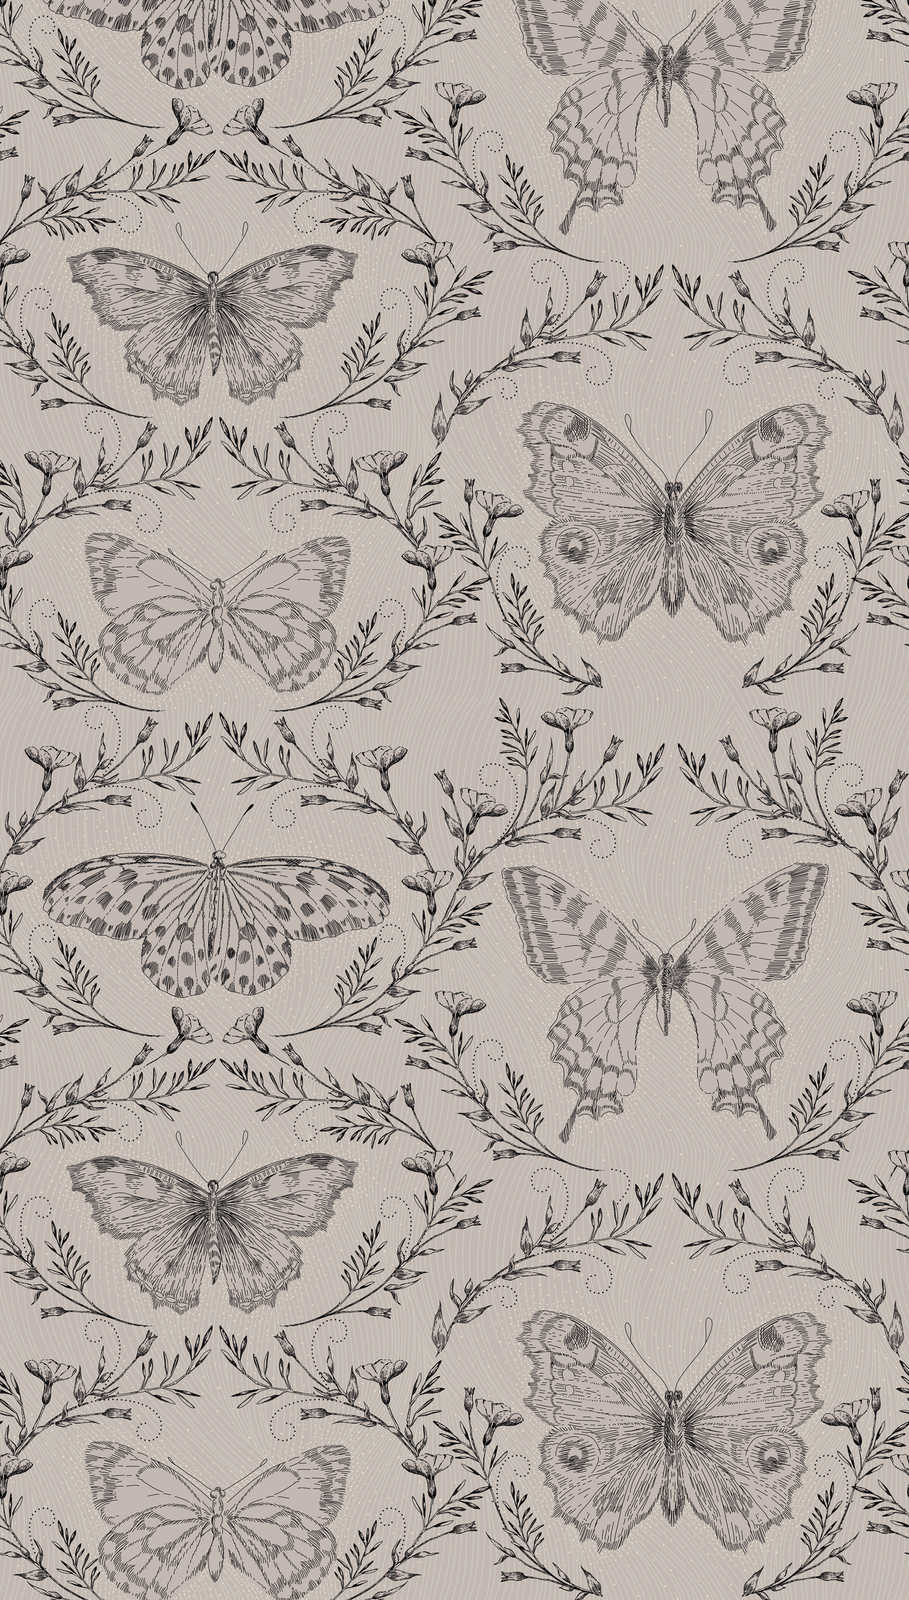             Schmetterlings Tapete mit Ranken im dunklen Design – Grau, Greige, Schwarz
        